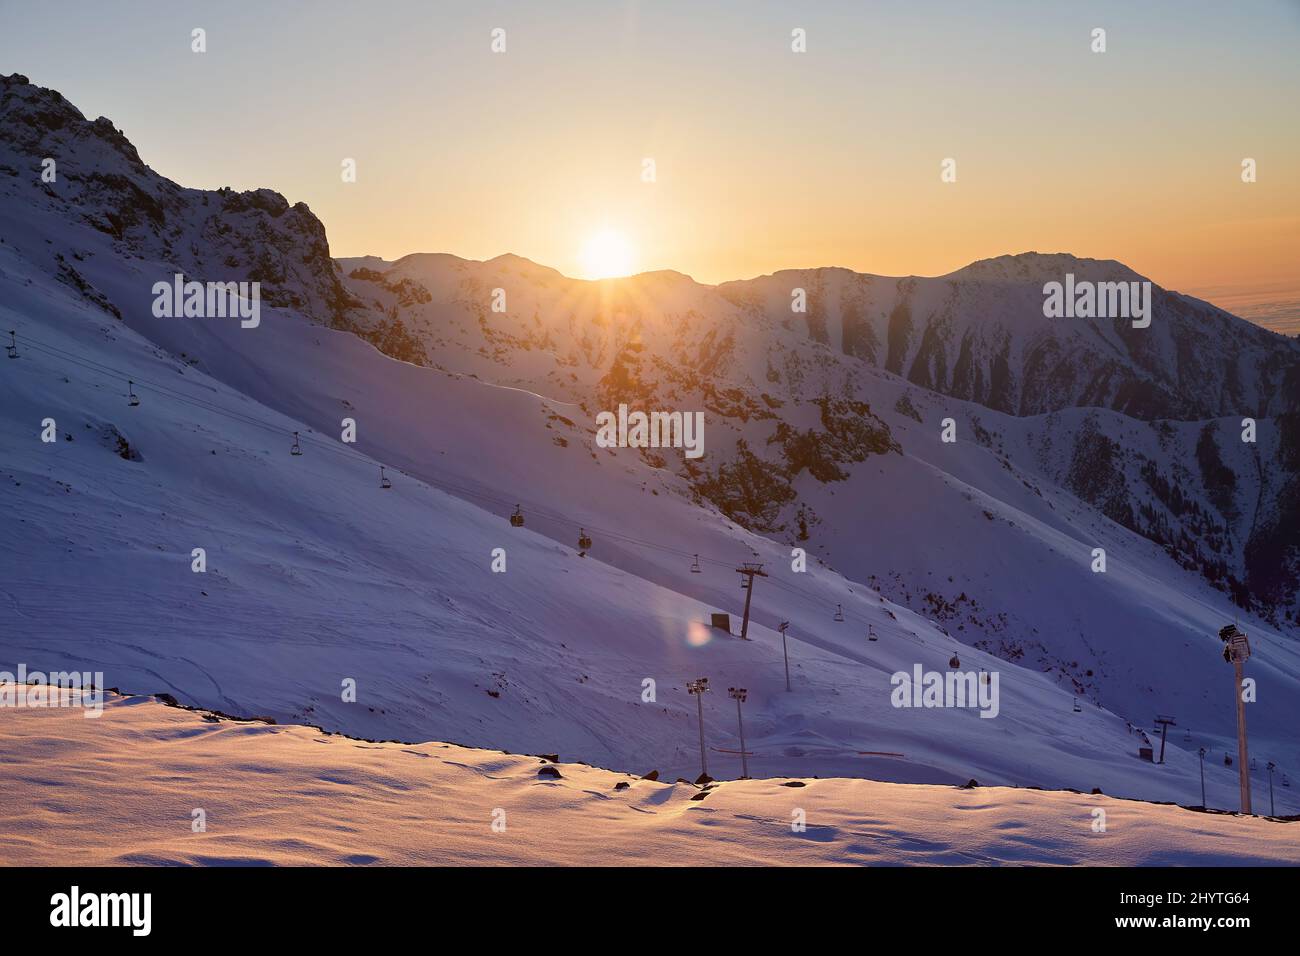 Hermoso paisaje Shymbulak resort montaña nevada vacía pista de esquí y teleférico en la puesta de sol naranja cielo brillar en Almaty, Kazajstán. Foto de stock